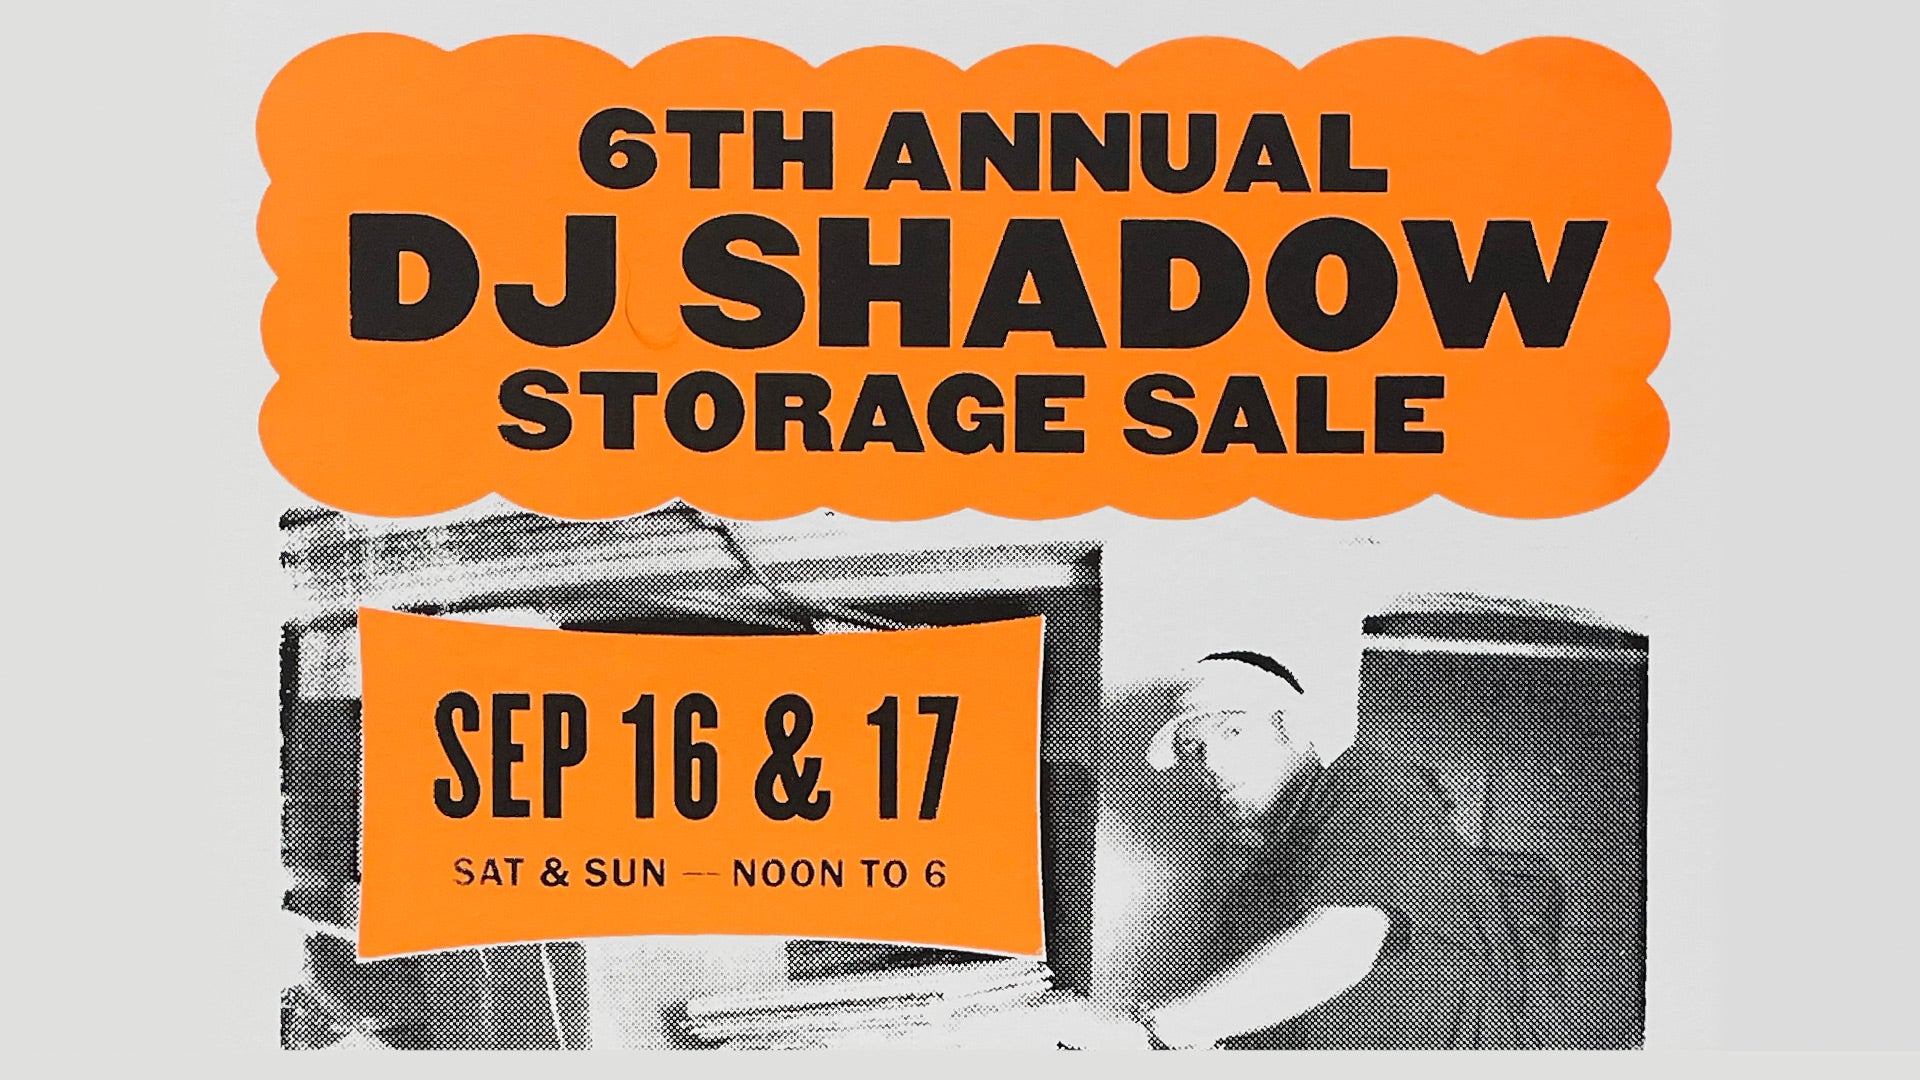 6th Annual DJ SHADOW Storage Sale